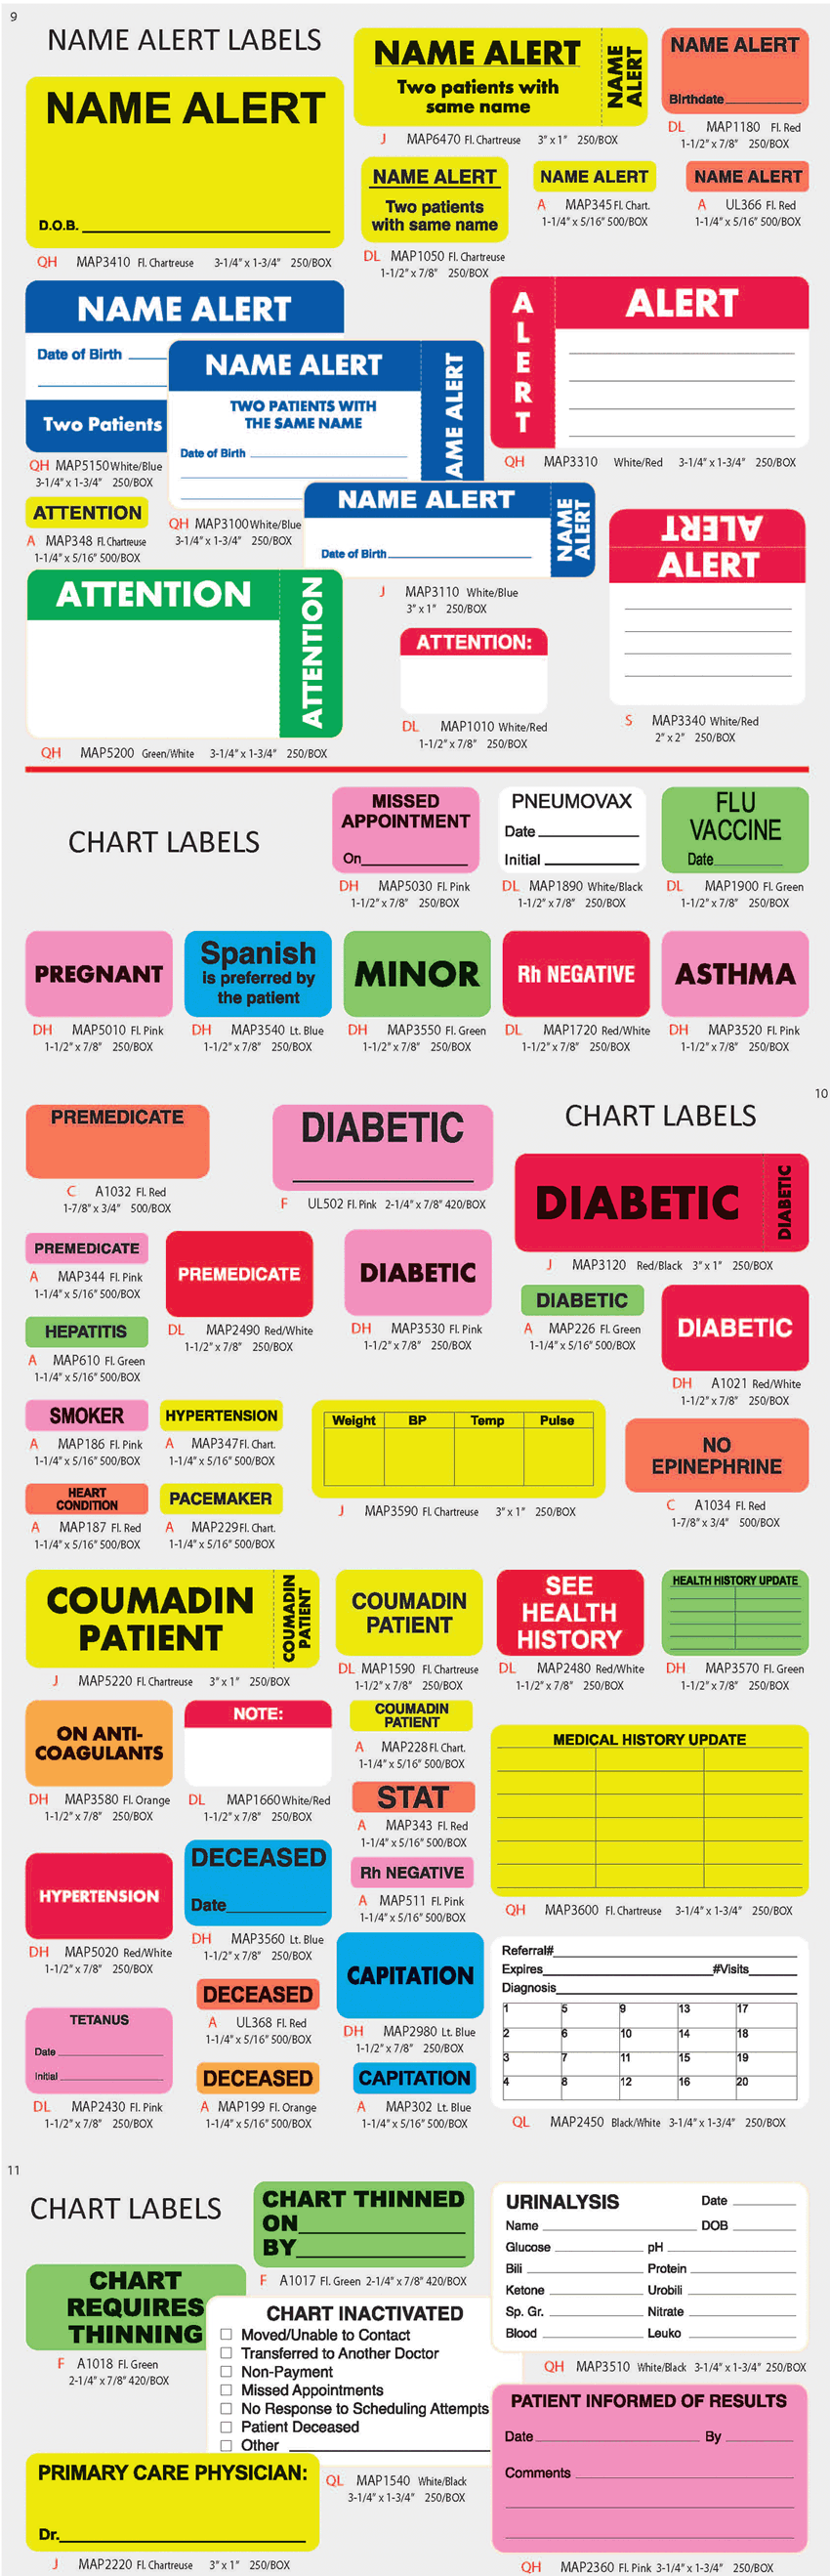 Patient Chart Labels